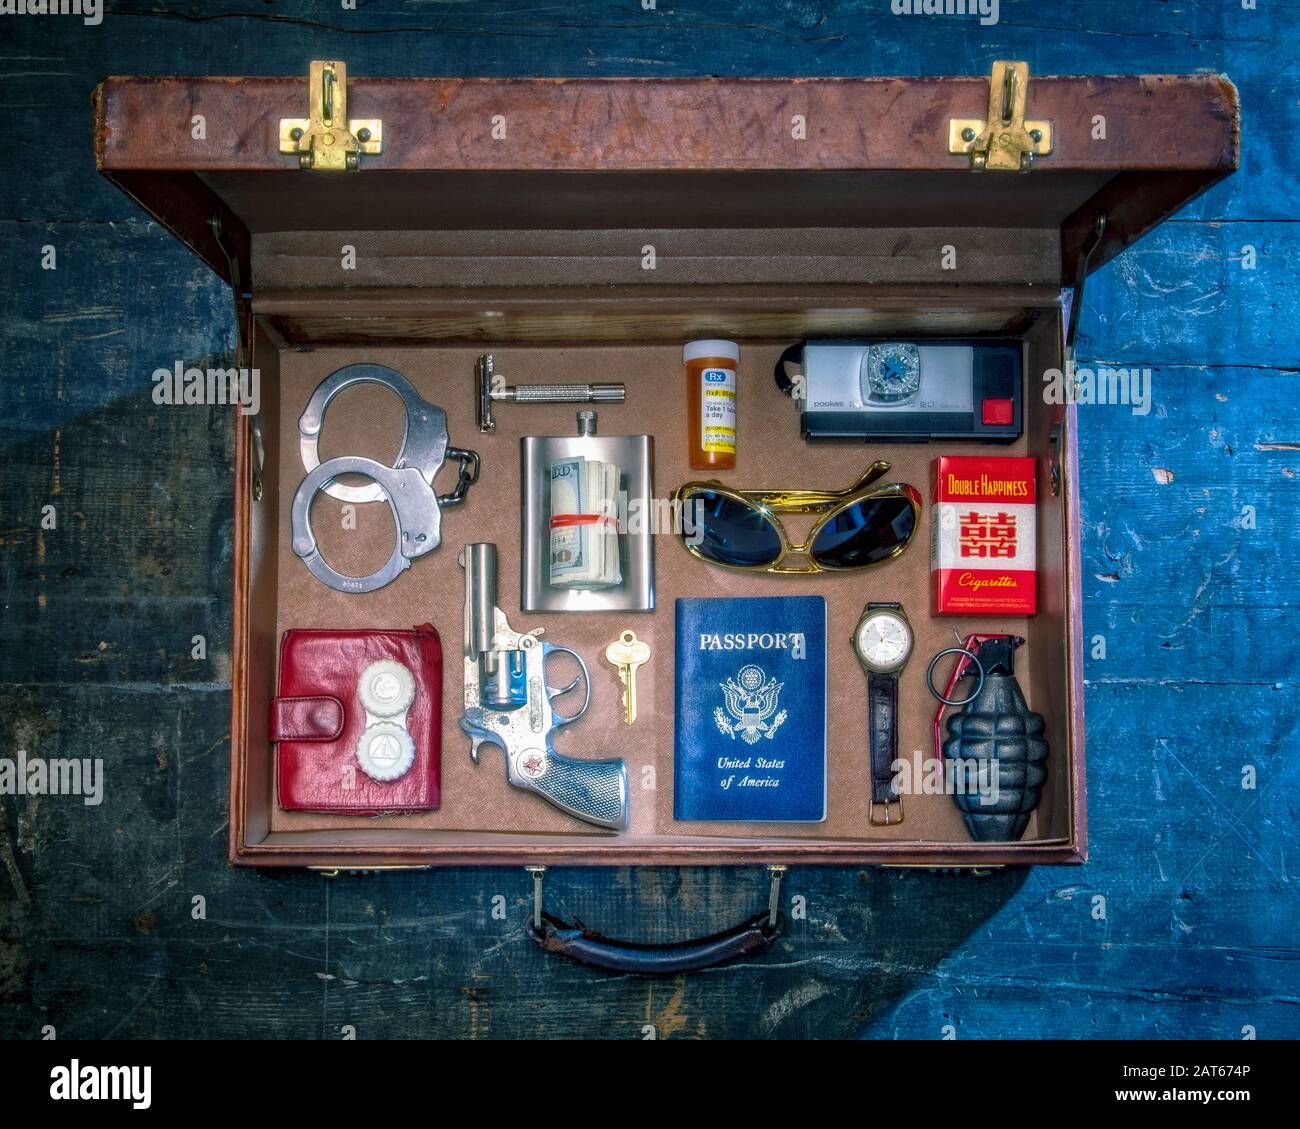 Una vista dall'alto di una valigetta in pelle di vecchio stile con oggetti da viaggio pericolosi accuratamente disposti all'interno in modo ordinato Foto Stock